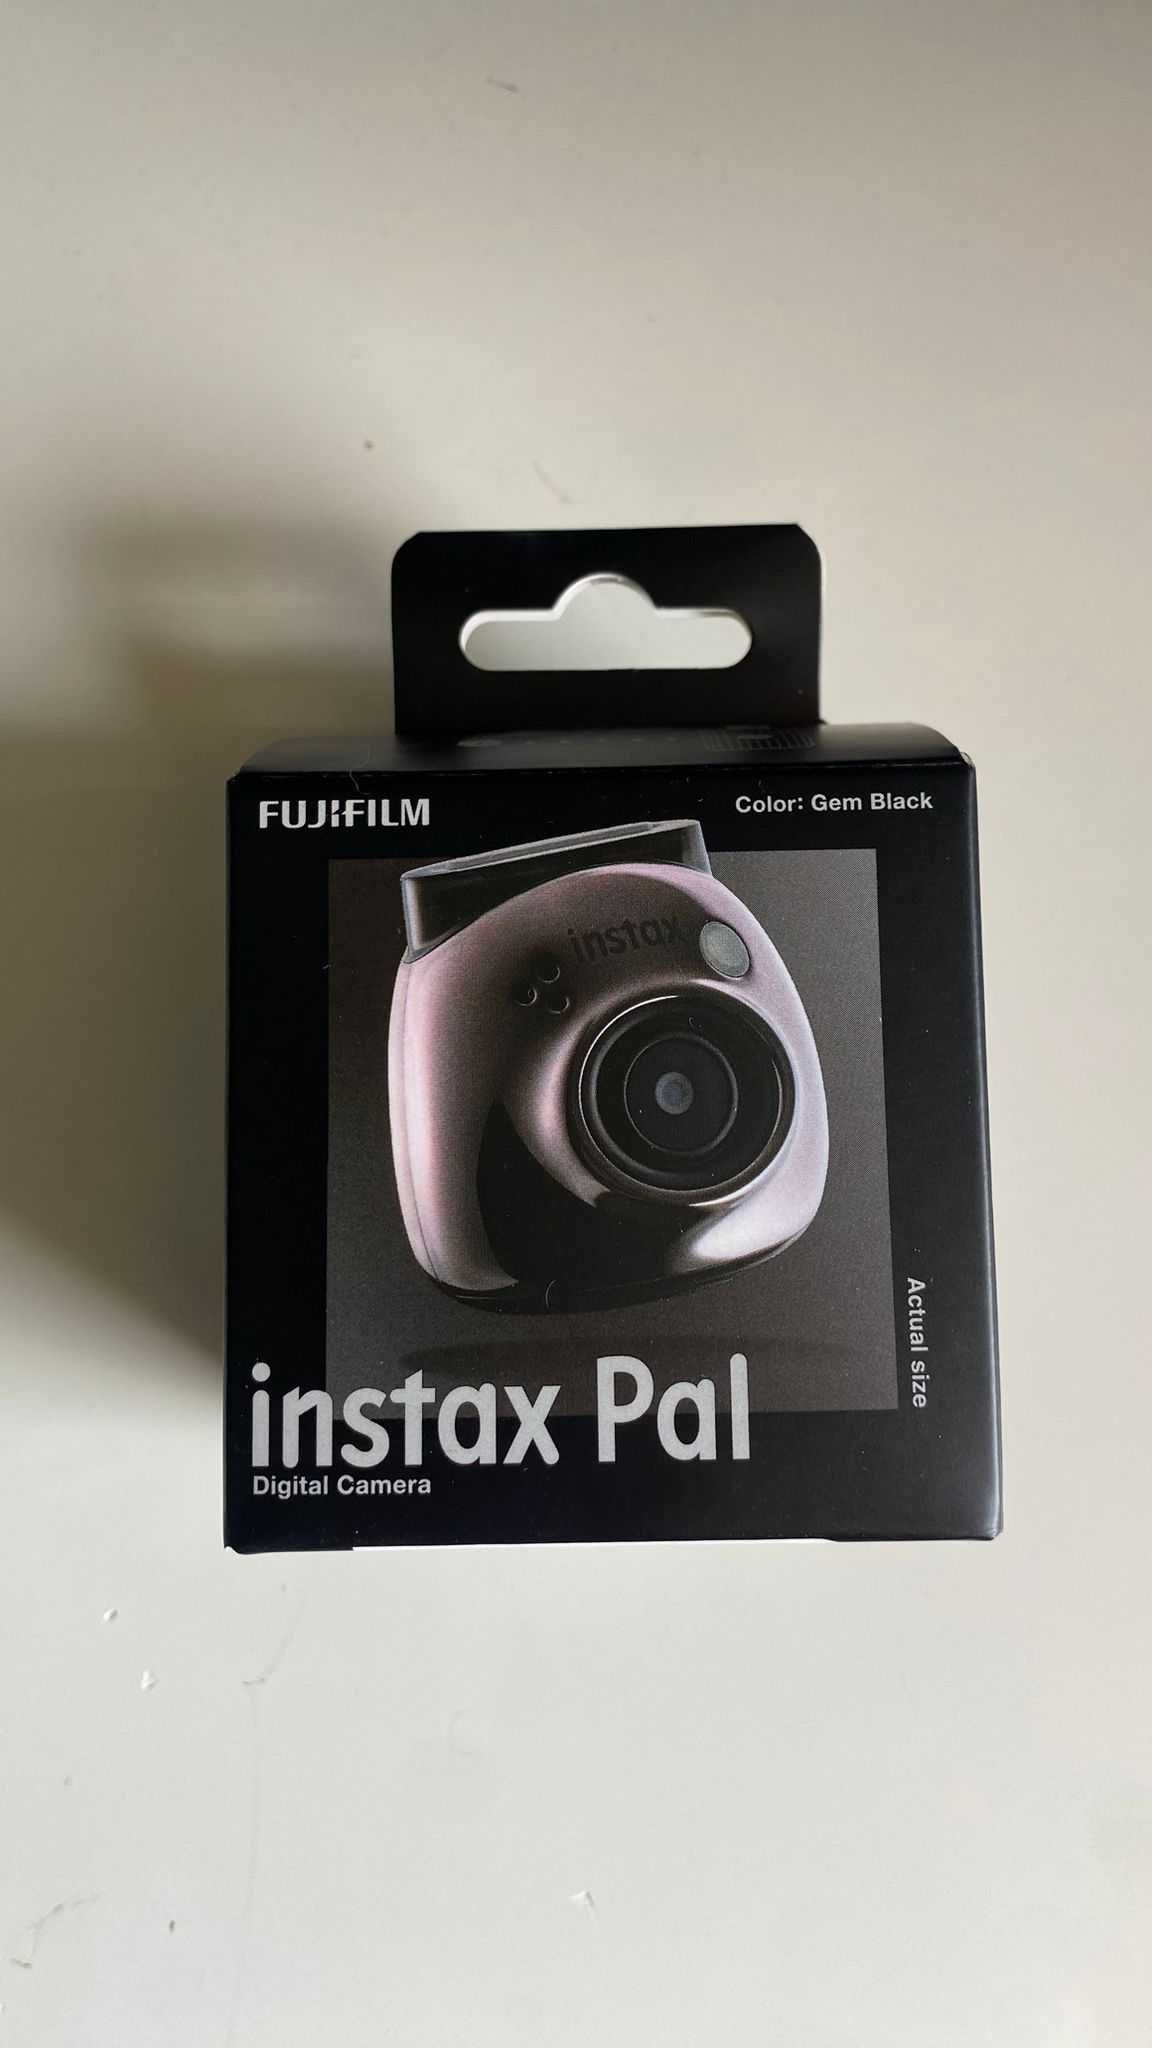 Aparat Fujifilm Instax Pal czarny (gem black) nowy, nieużywany